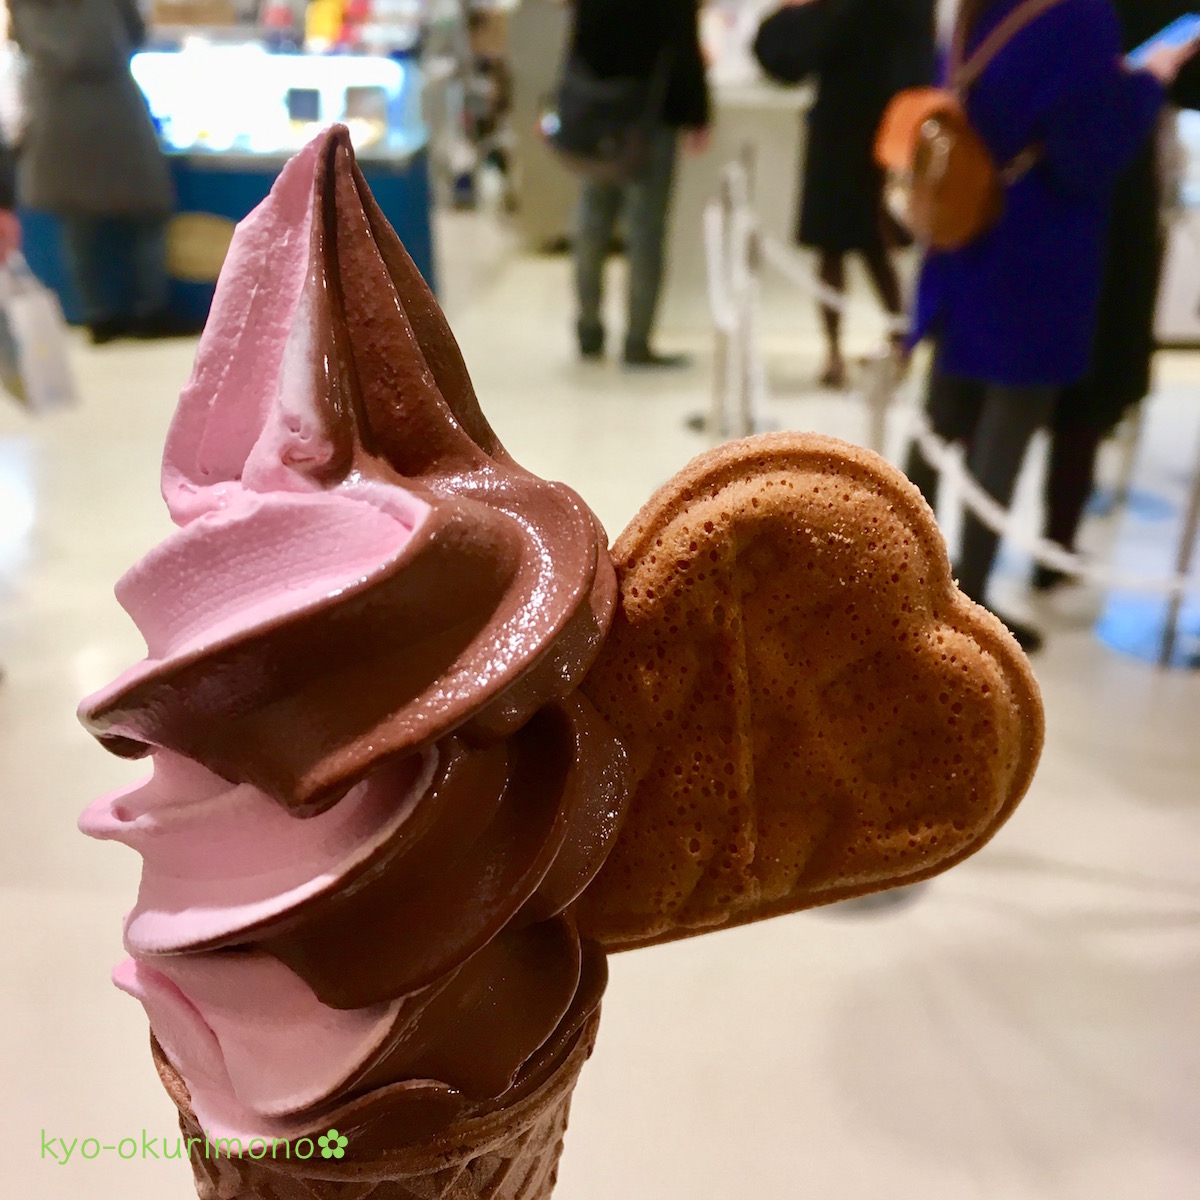 阪急うめだ店バレンタインチョコレート博覧会のソフトクリーム